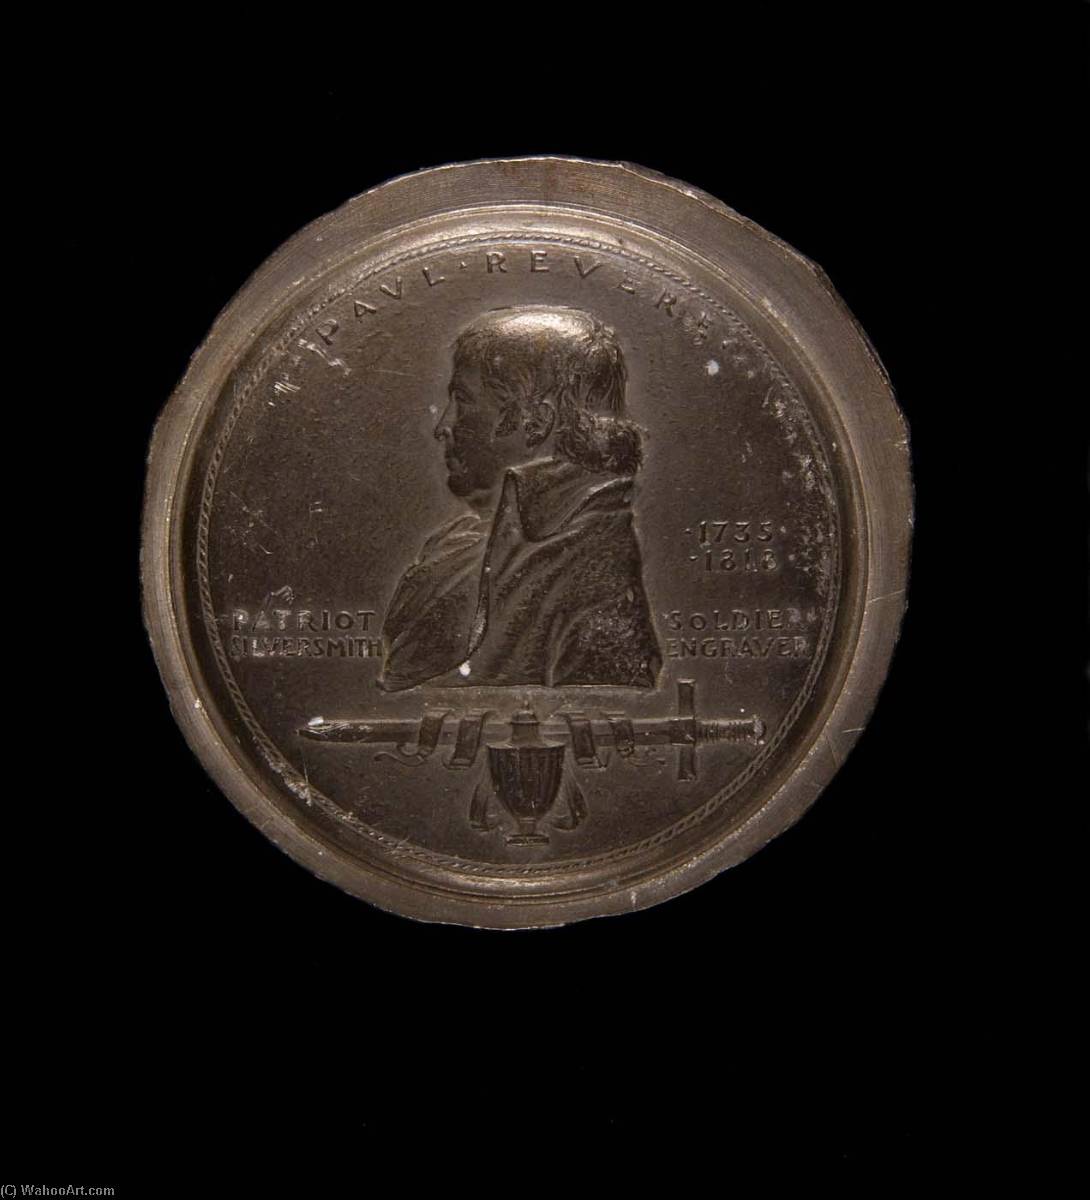 WikiOO.org - אנציקלופדיה לאמנויות יפות - ציור, יצירות אמנות Anthony De Francisci - Paul Revere Sesquicentennial Medal (reverse)